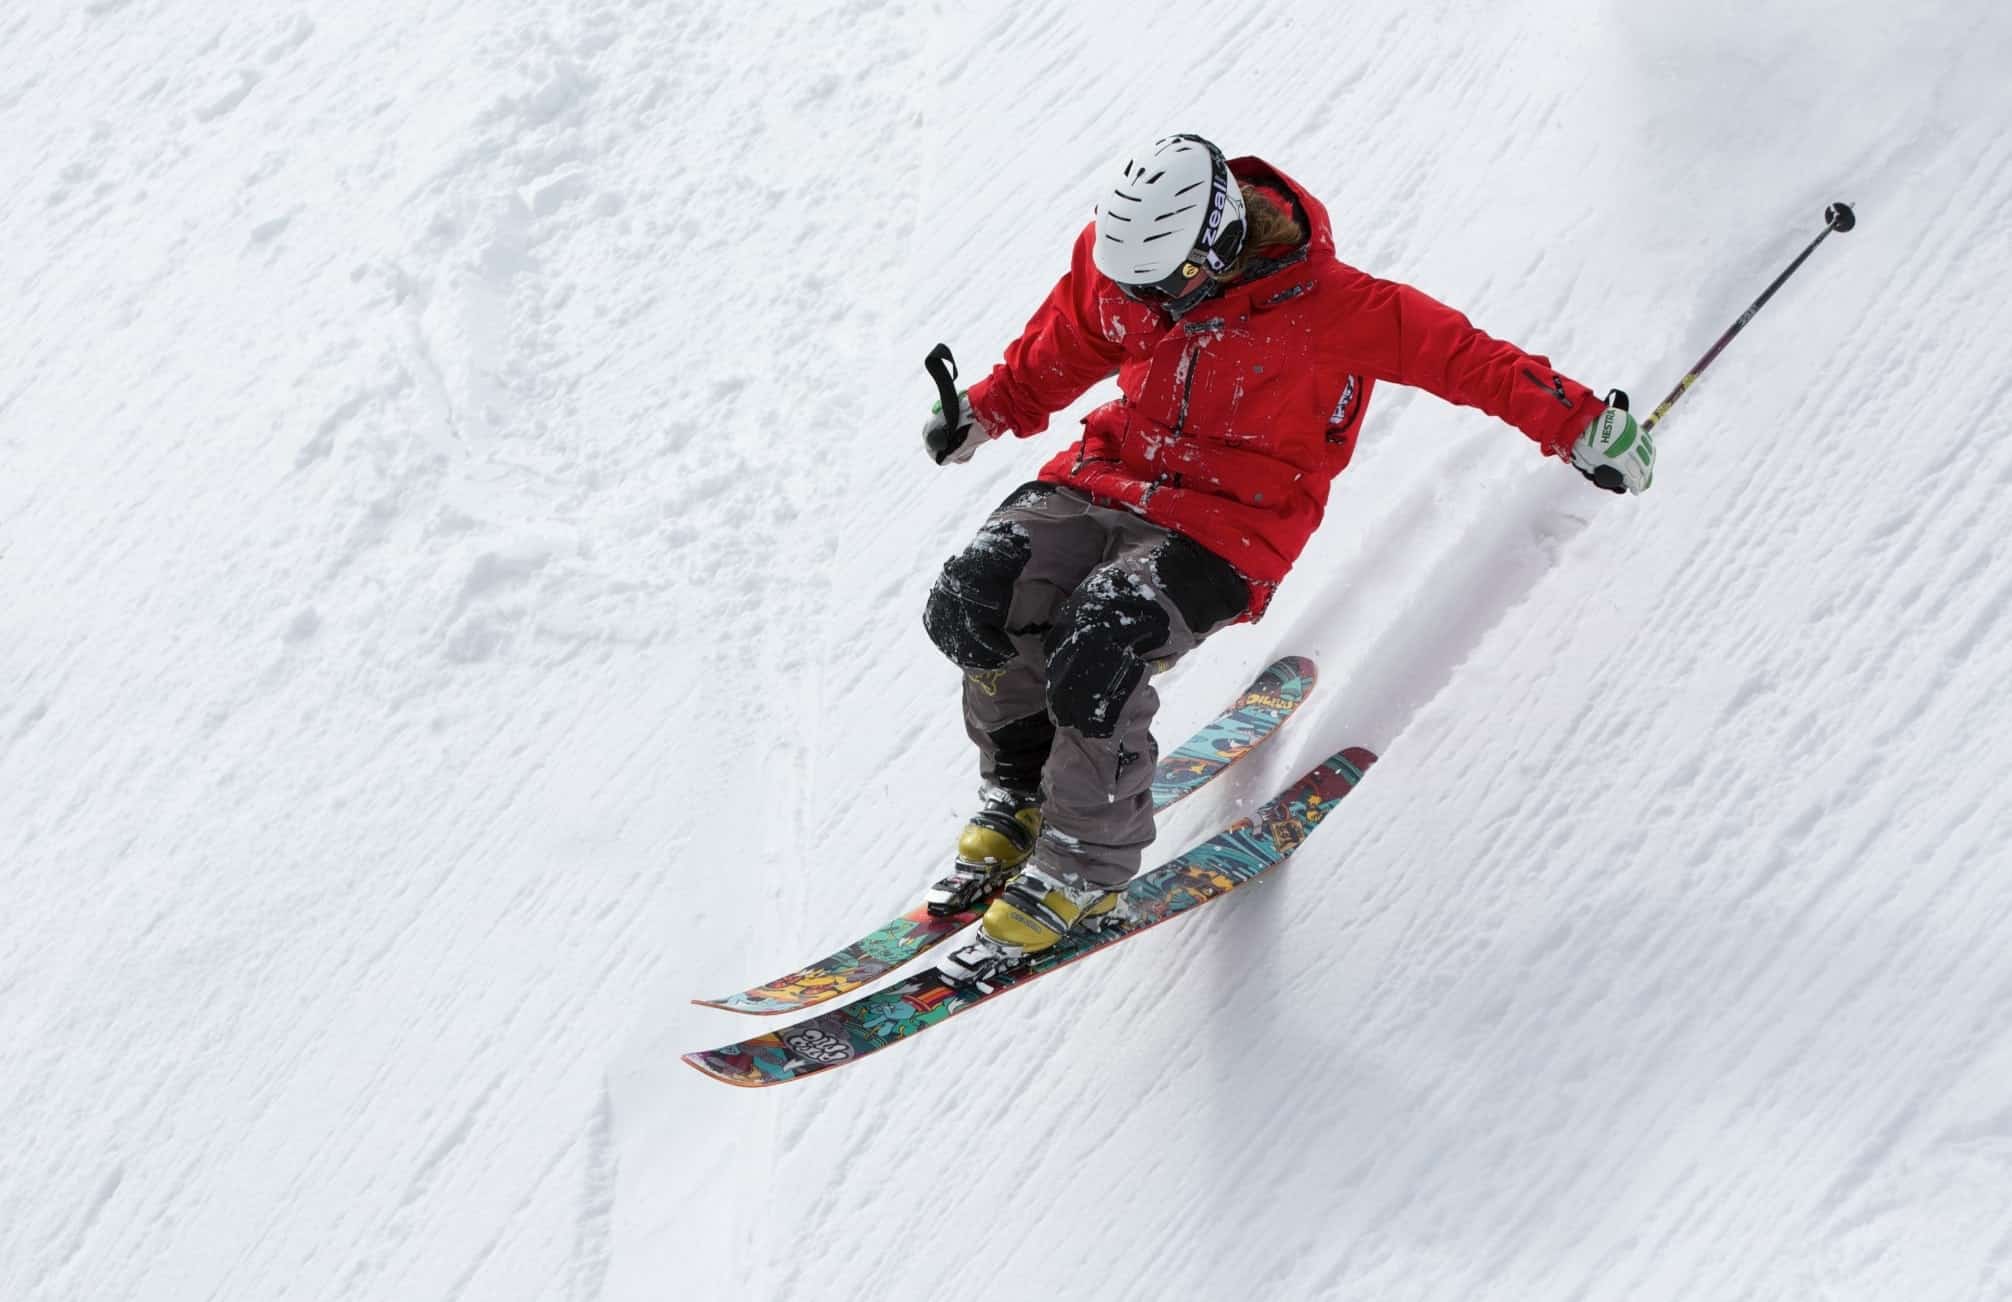 Skier in red, skiing down steep slope